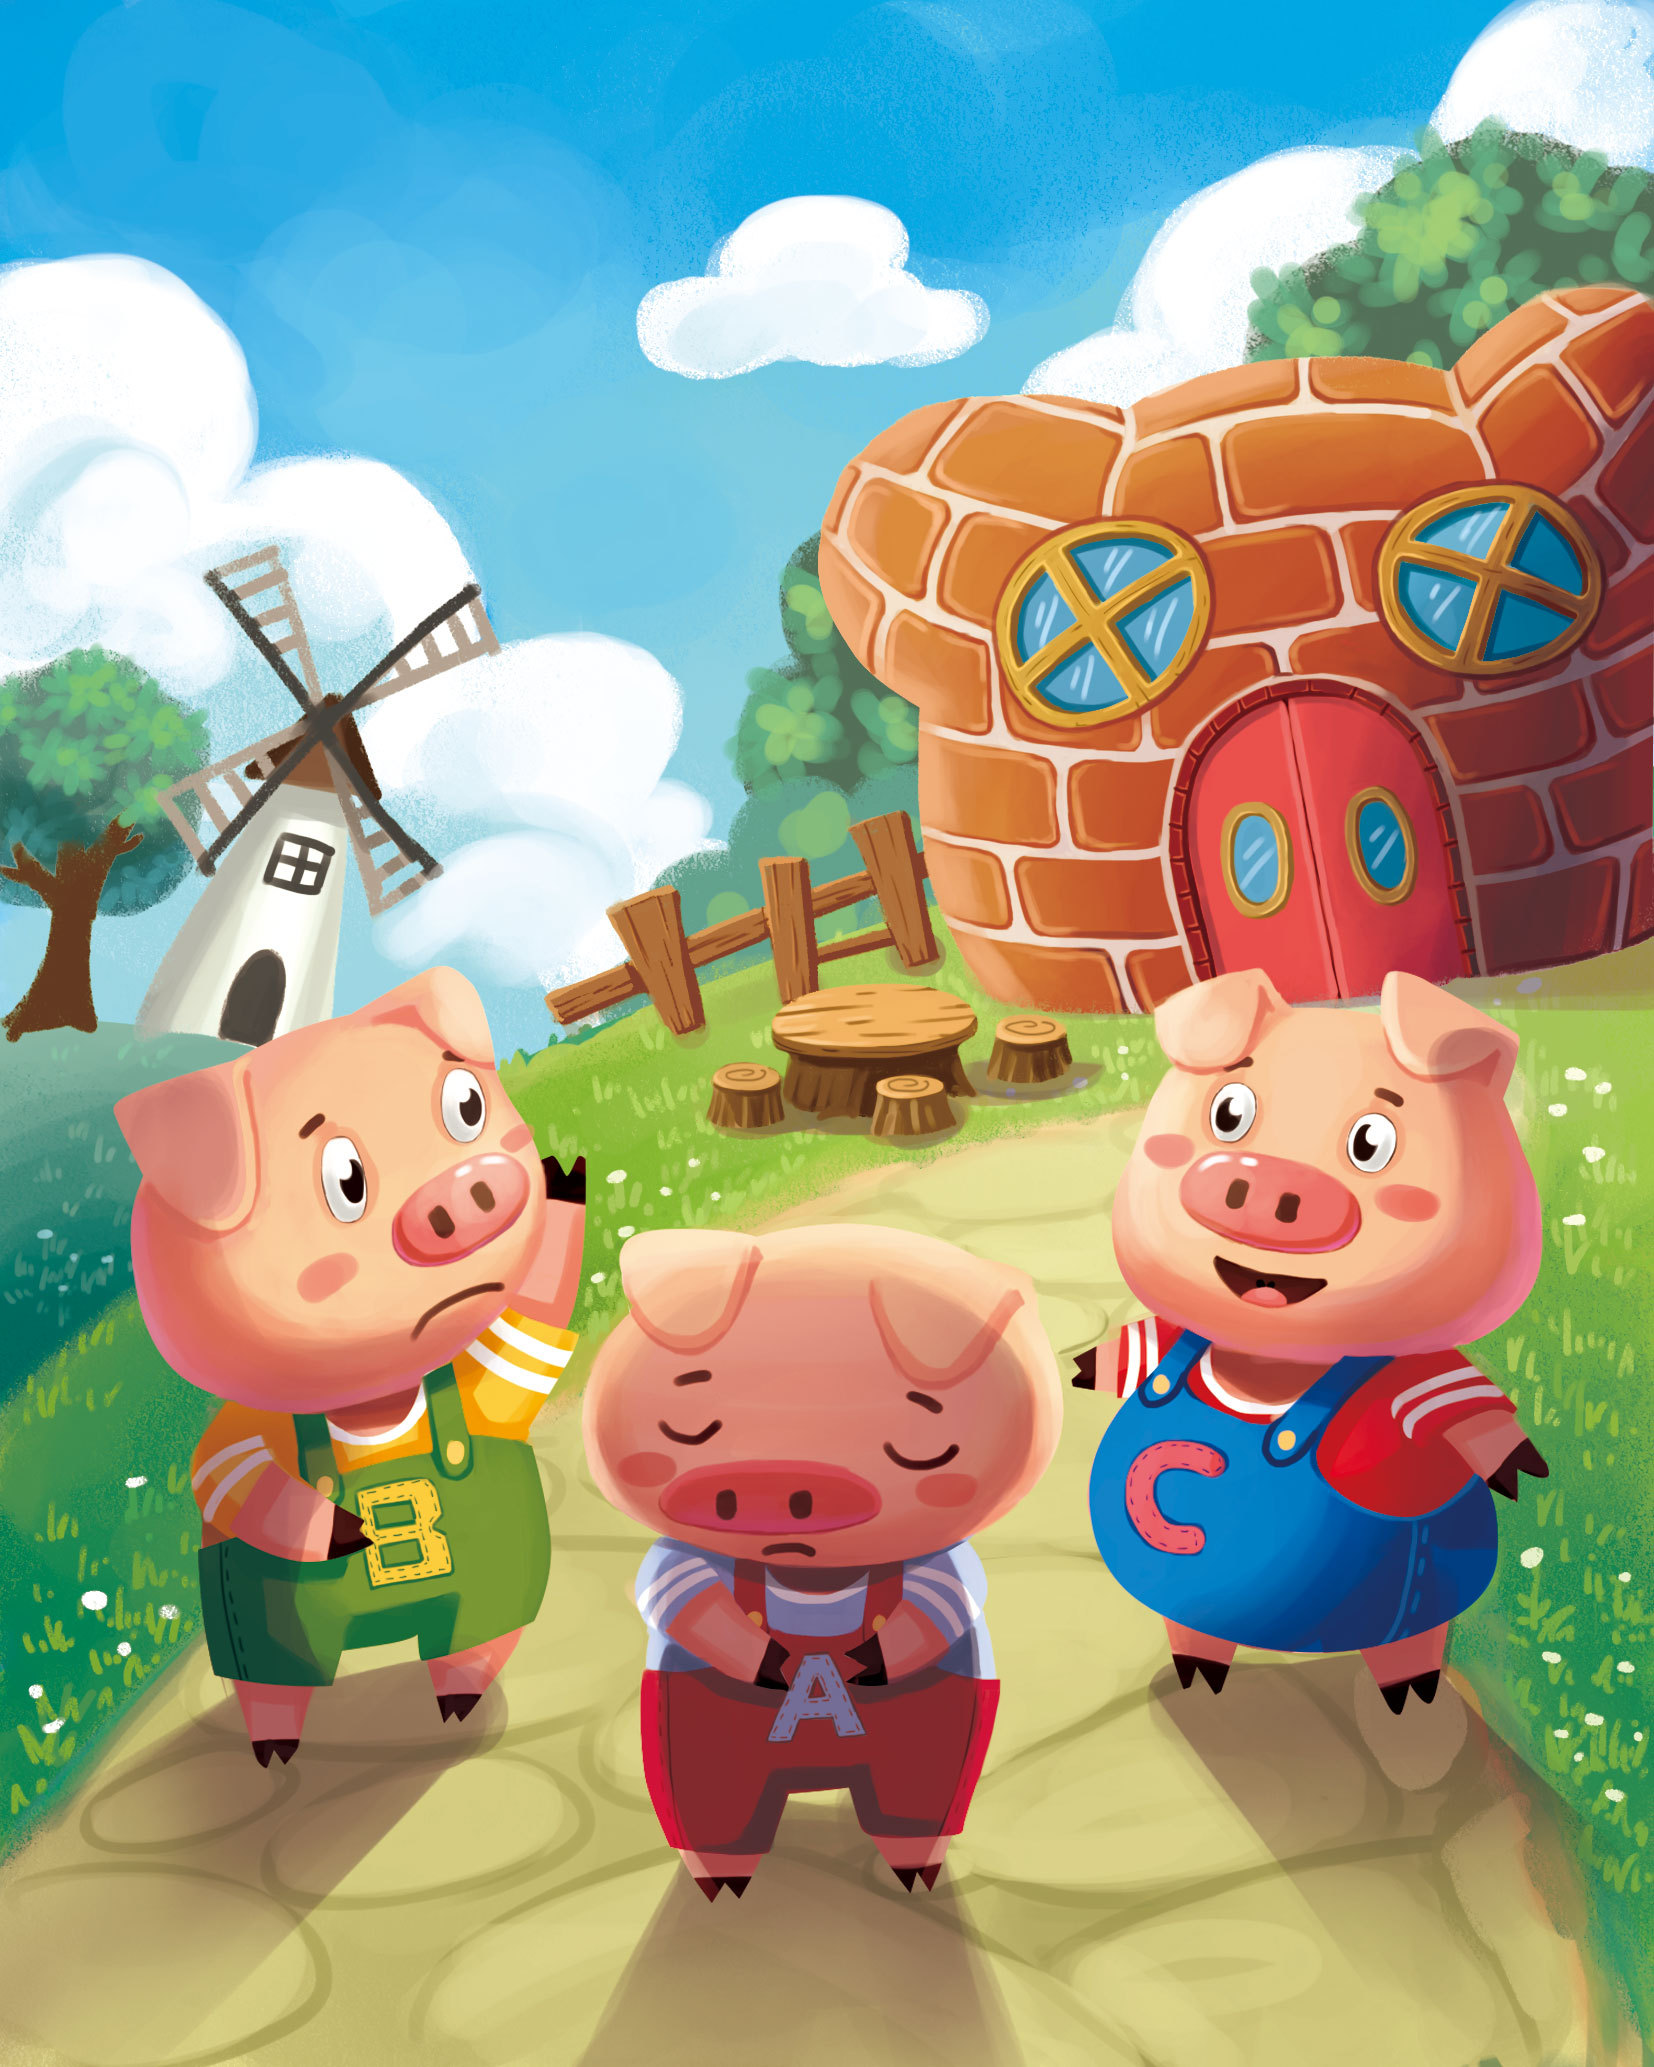 三只小猪在农场里玩插画图片素材_ID:317067796-Veer图库